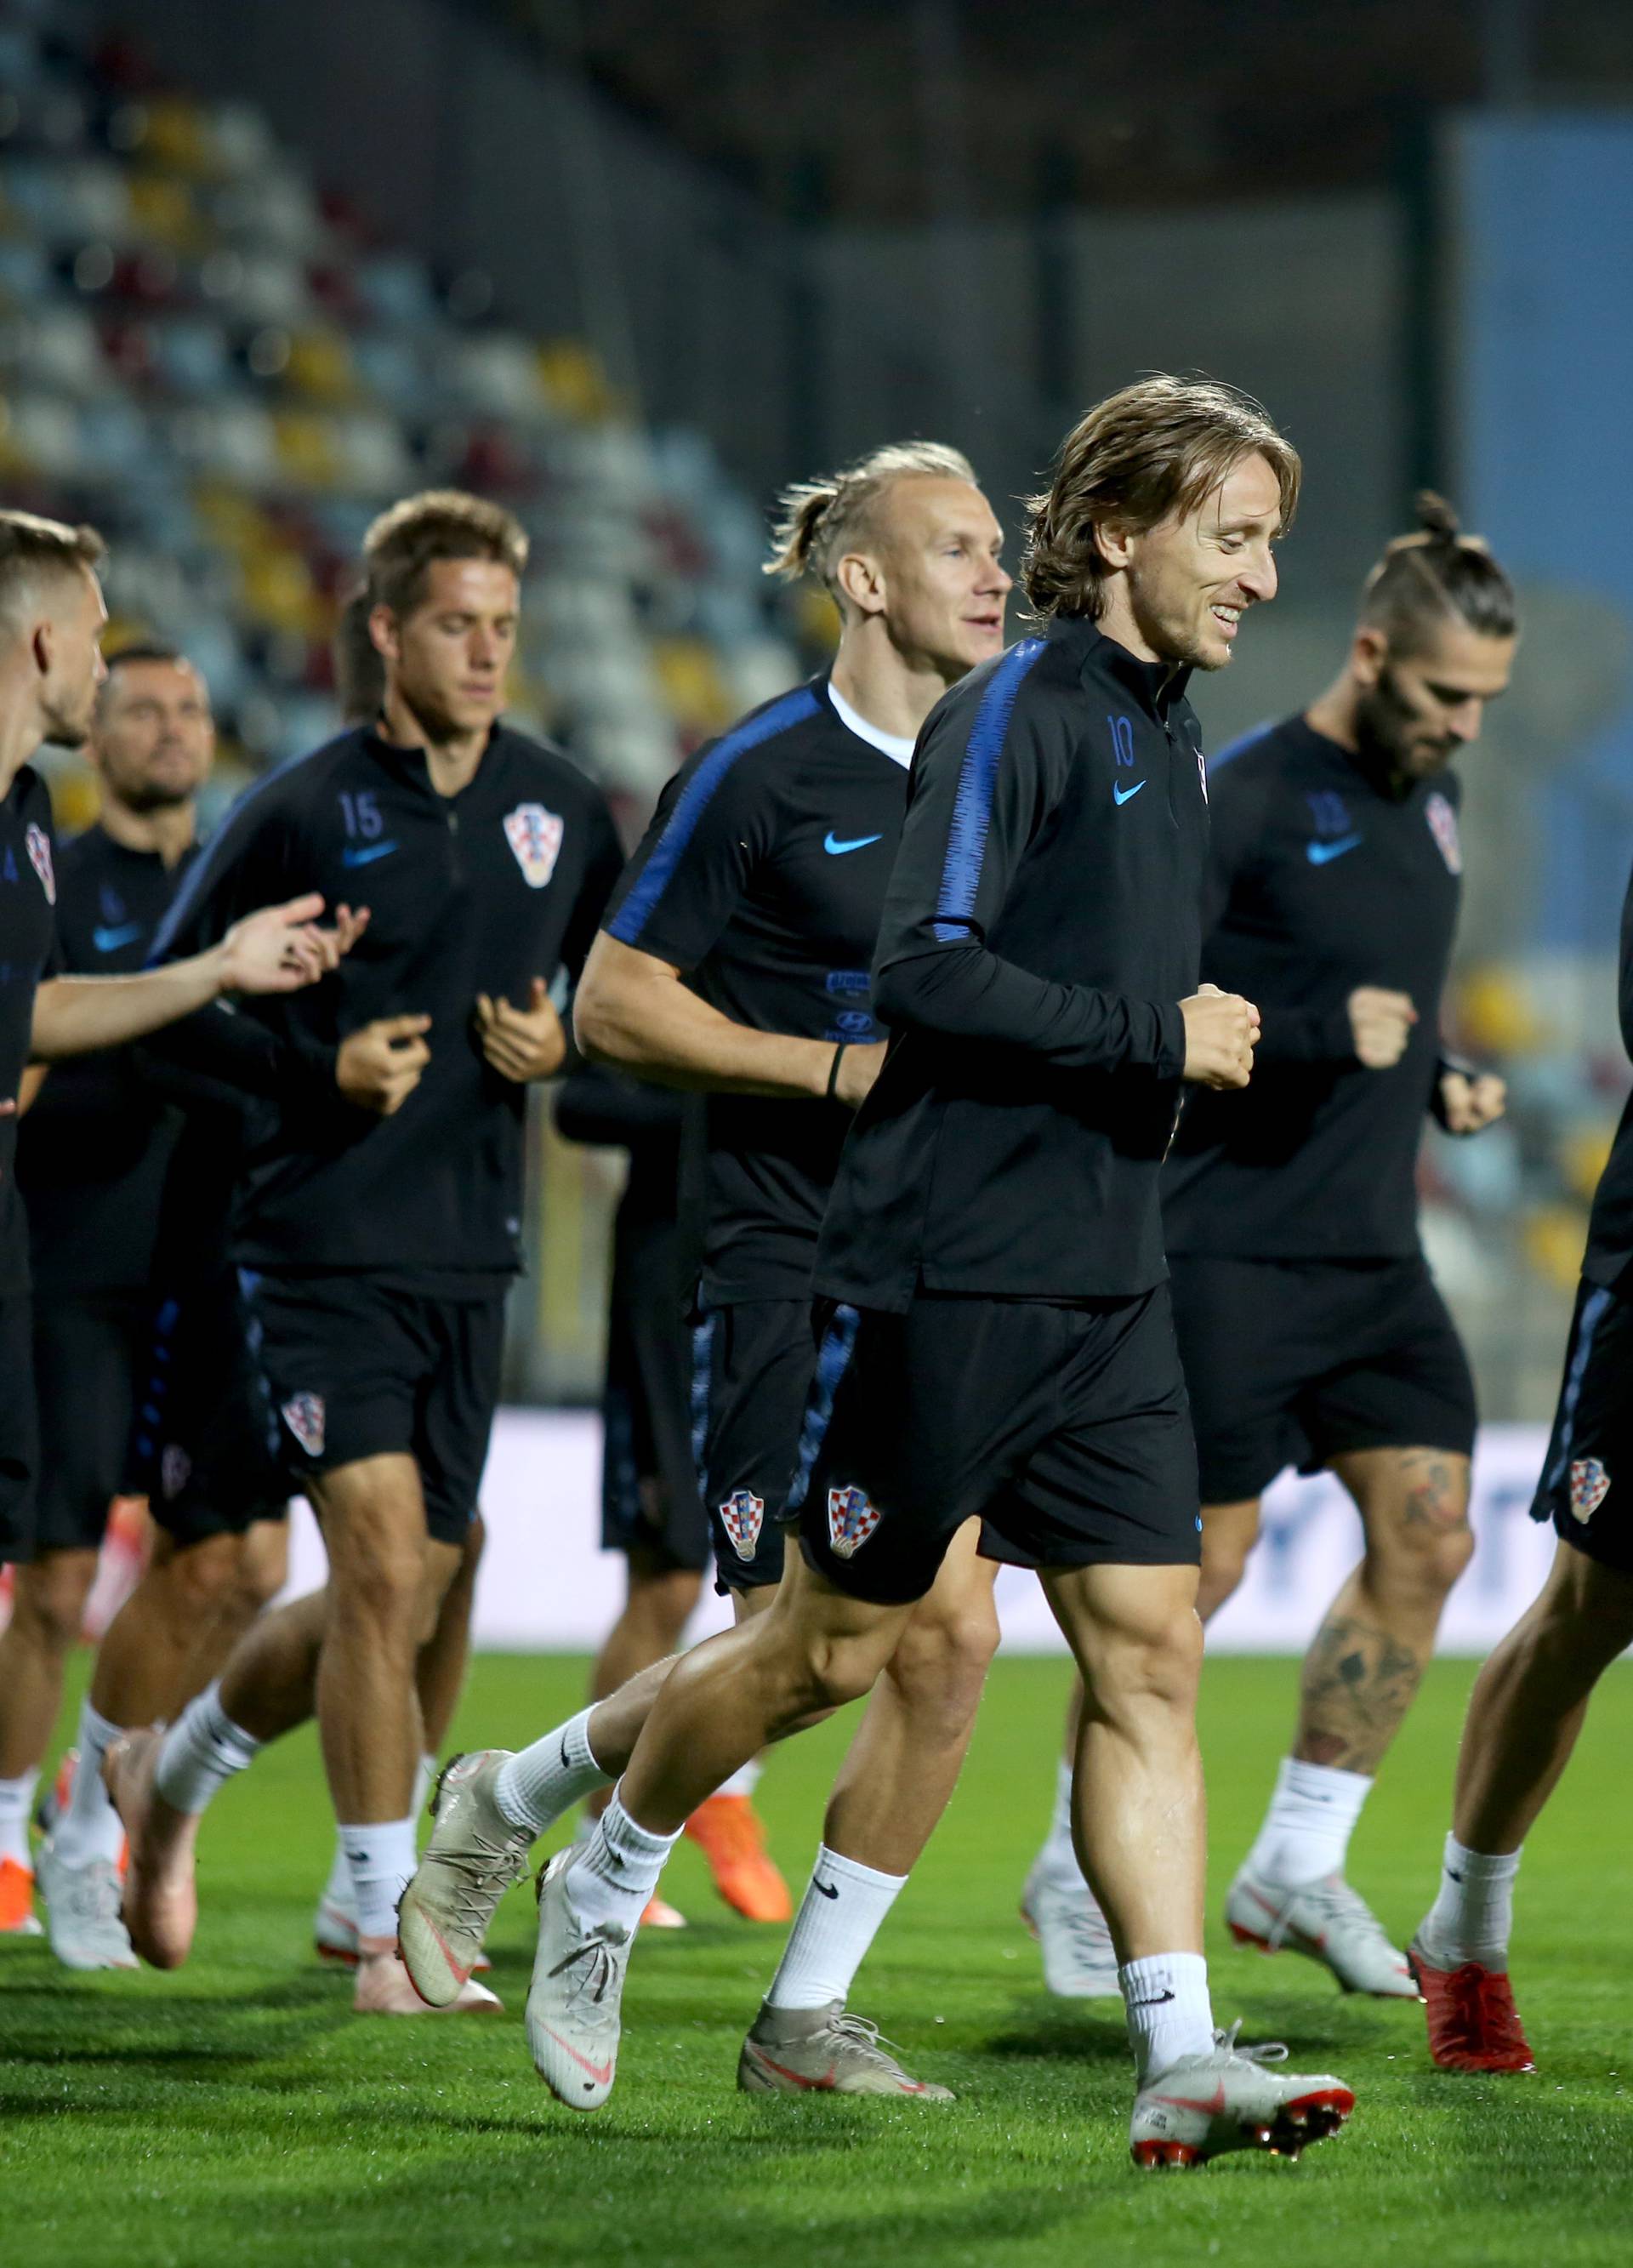 Rijeka: Trening reprezentativaca na popunjenom stadionu uoÄi utakmice s Engleskom